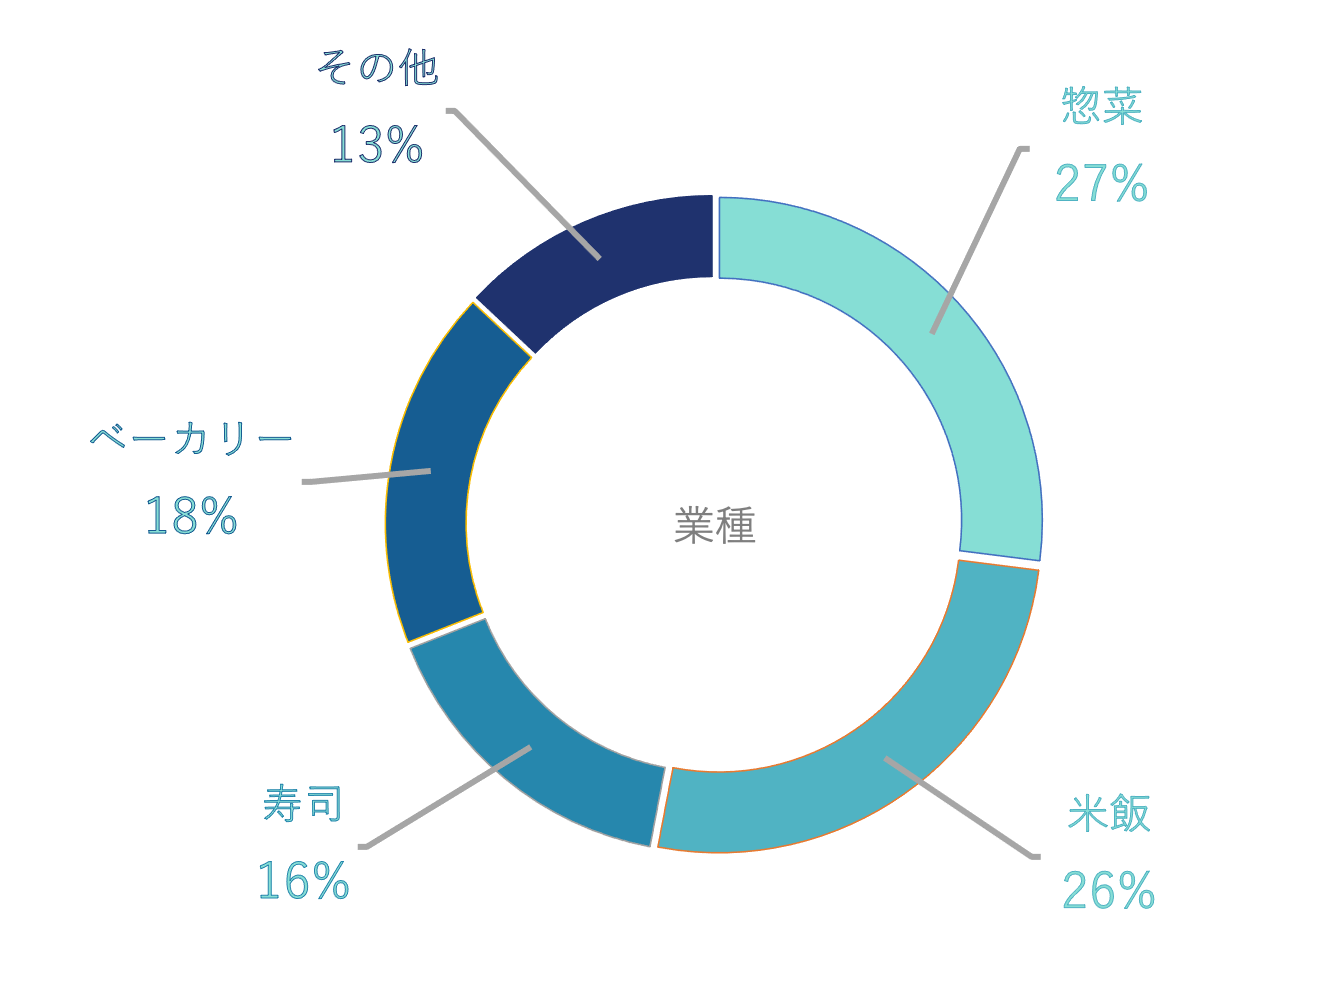 利用店舗における部門ごとの利用割合を表した円グラフ